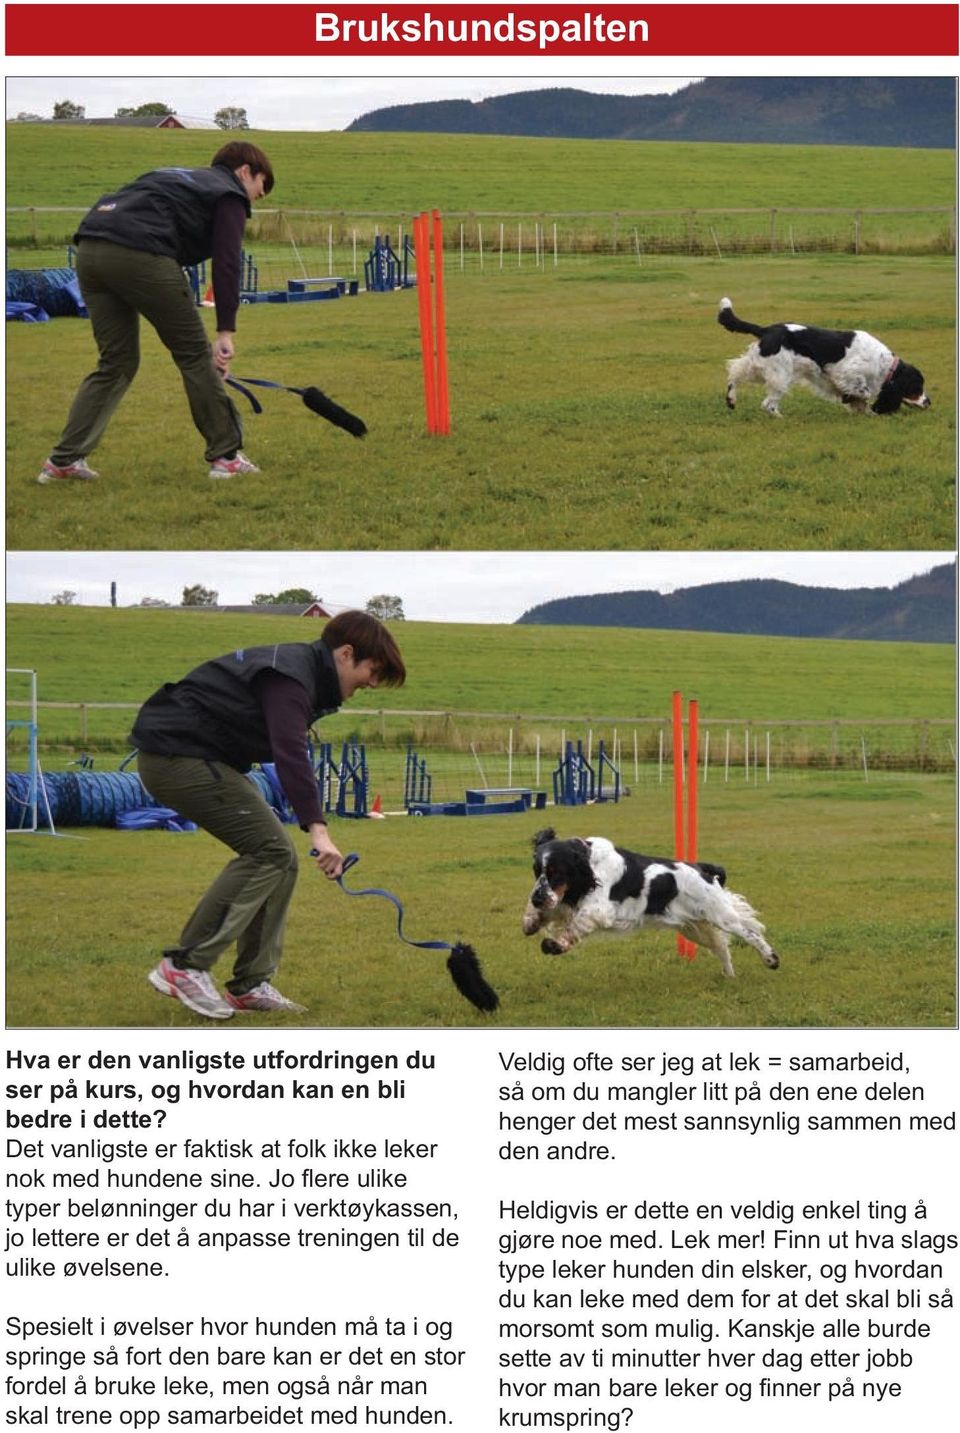 Spesielt i øvelser hvor hunden må ta i og springe så fort den bare kan er det en stor fordel å bruke leke, men også når man skal trene opp samarbeidet med hunden.